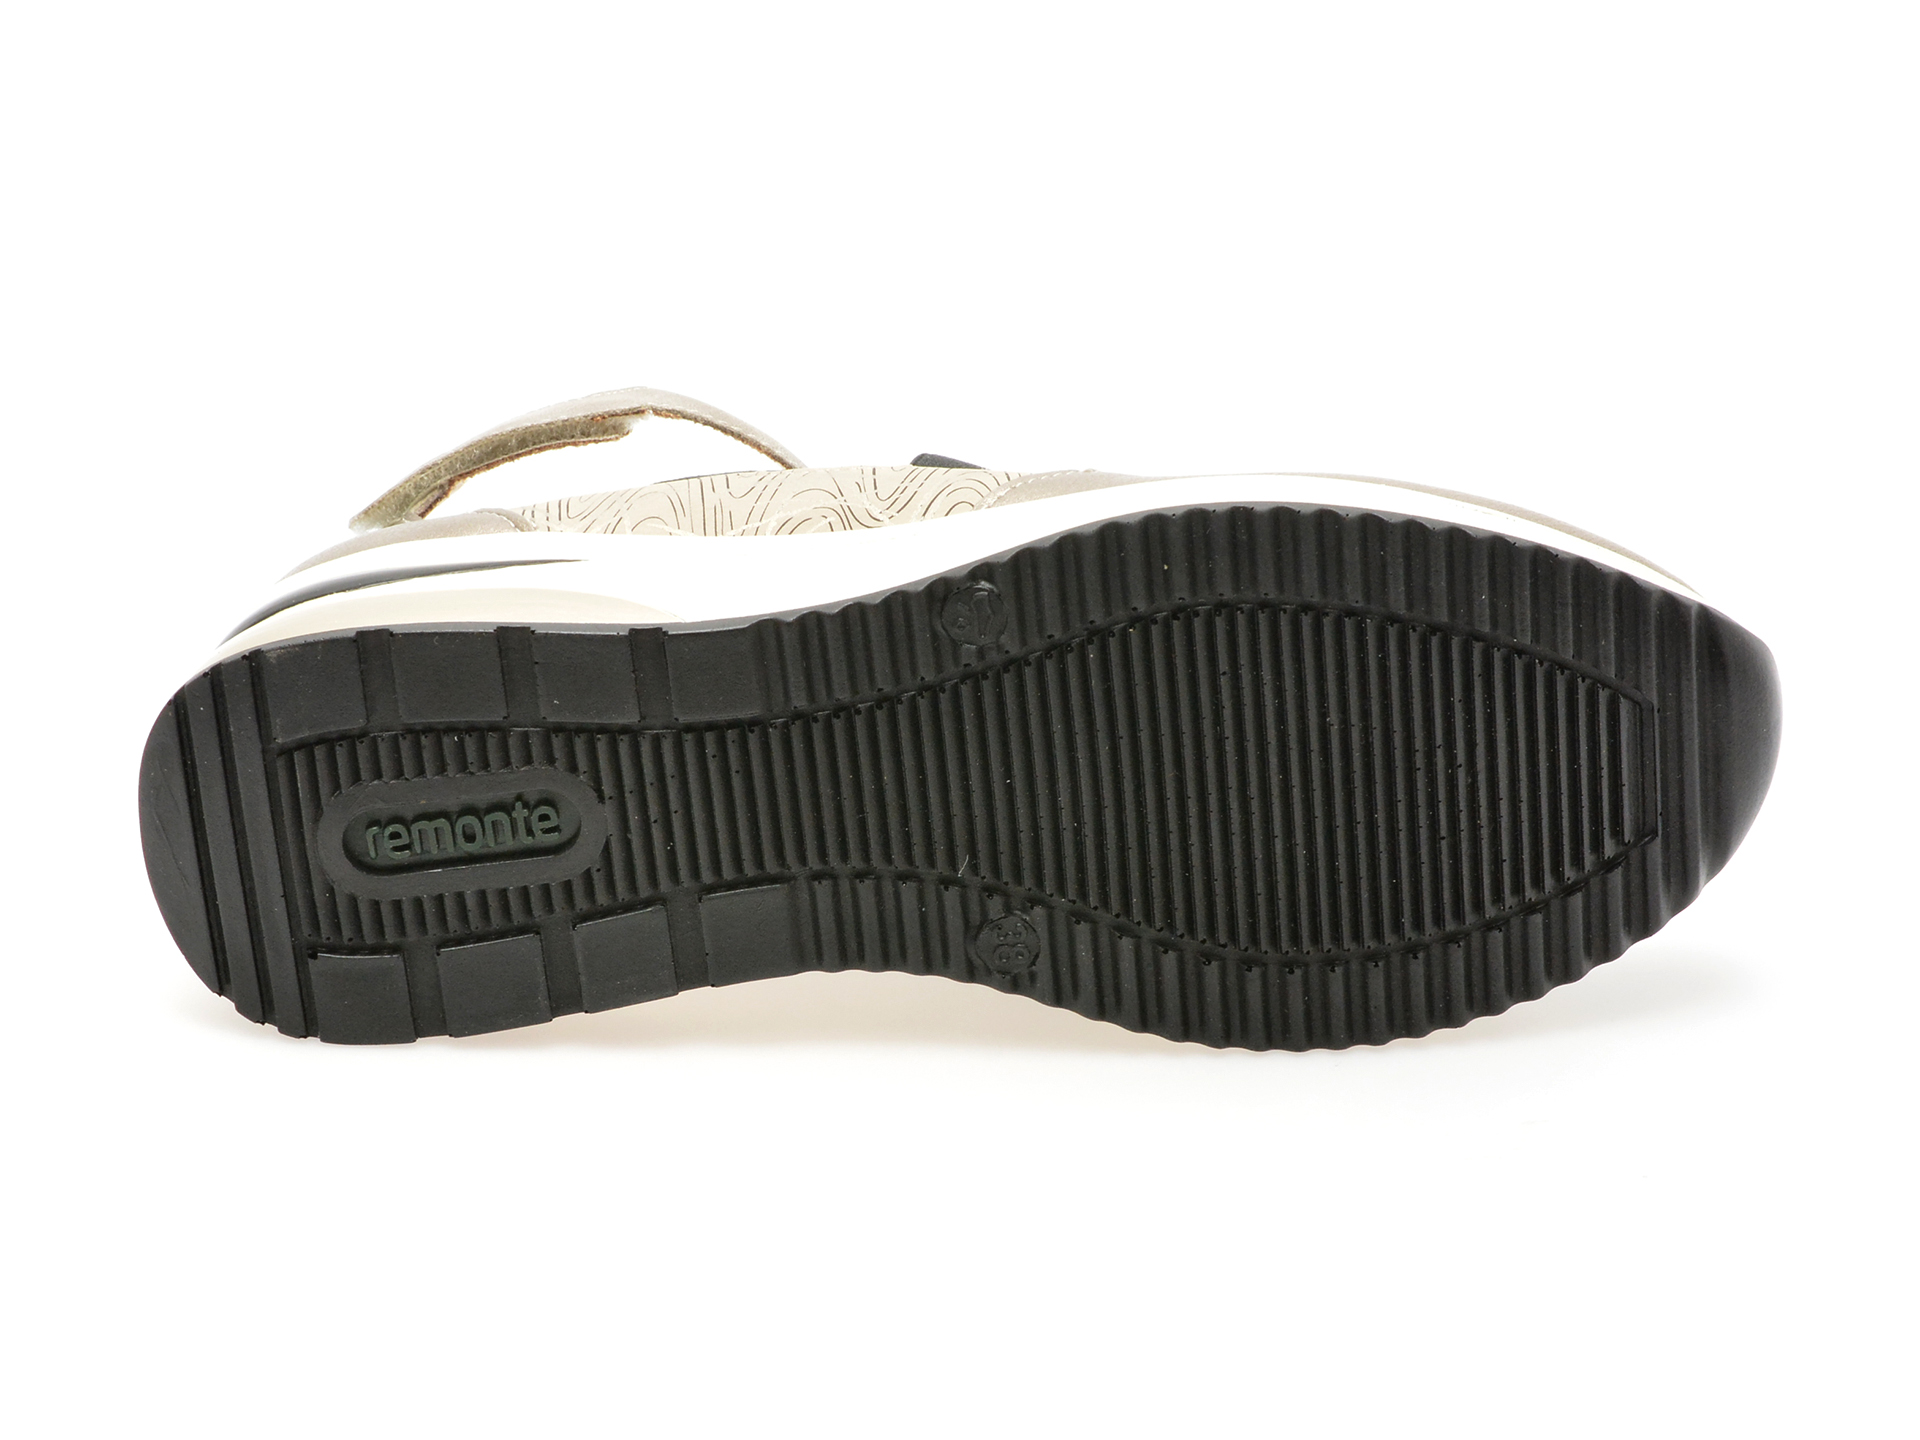 Pantofi Casual REMONTE gri, D2411, din piele ecologica